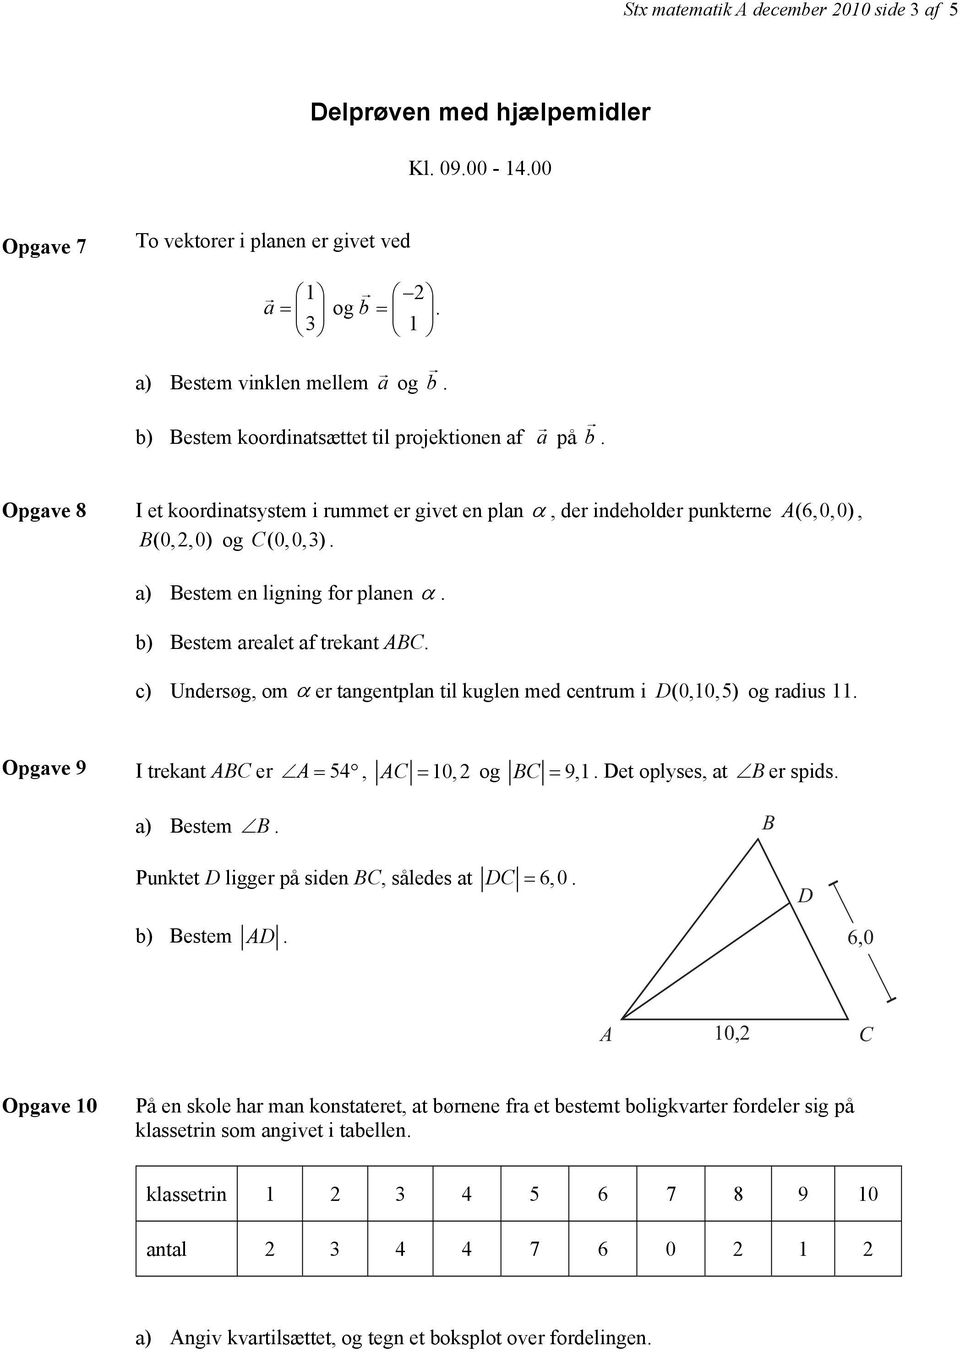 a) Bestem en ligning for planen α. b) Bestem arealet af trekant ABC. c) Undersøg, om α er tangentplan til kuglen med centrum i D (0,10,5) og radius 11.